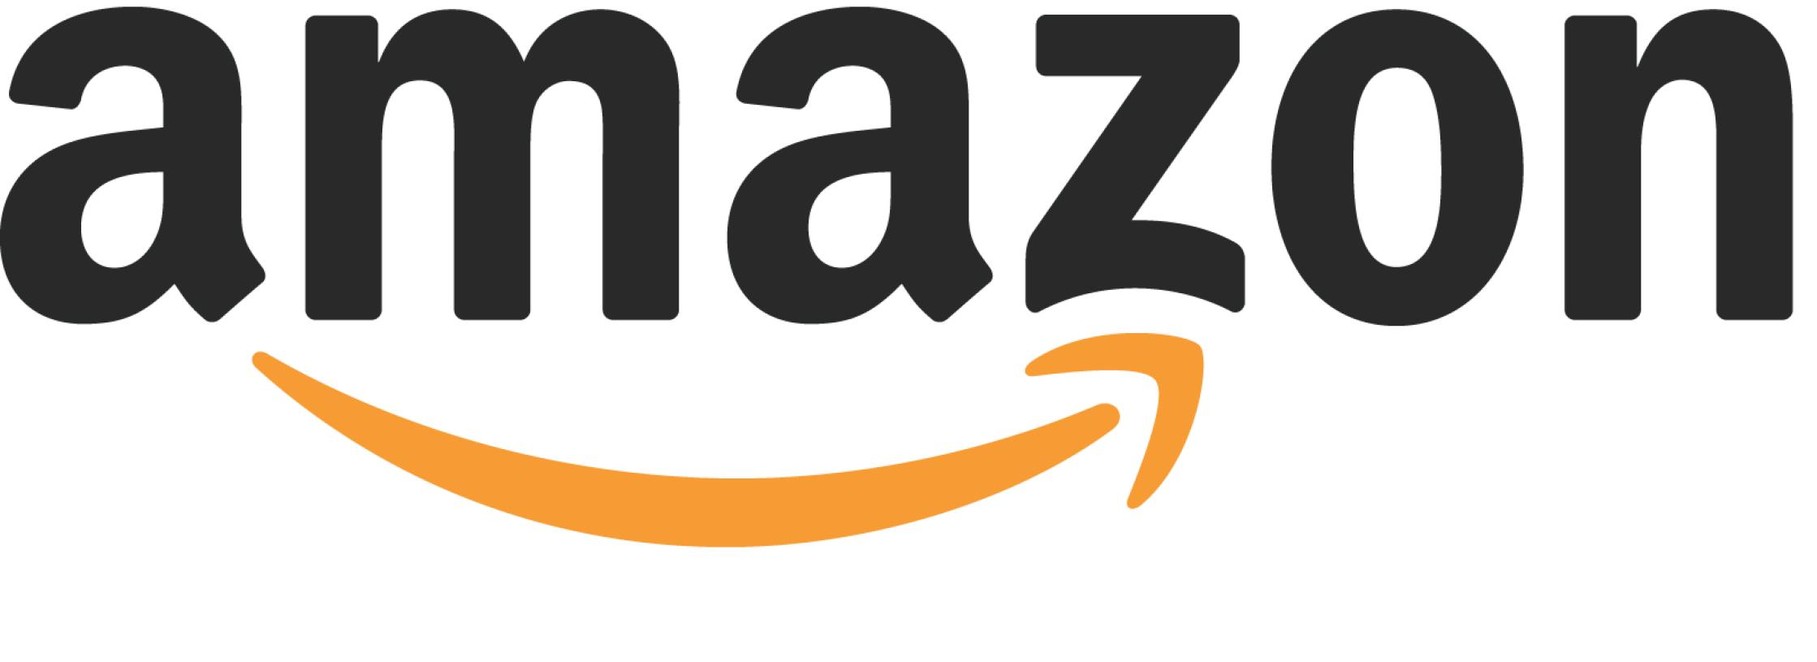 Tränenhase, Band 1 Kostet auf Amazone 6,50€ Kostenloser Versand.